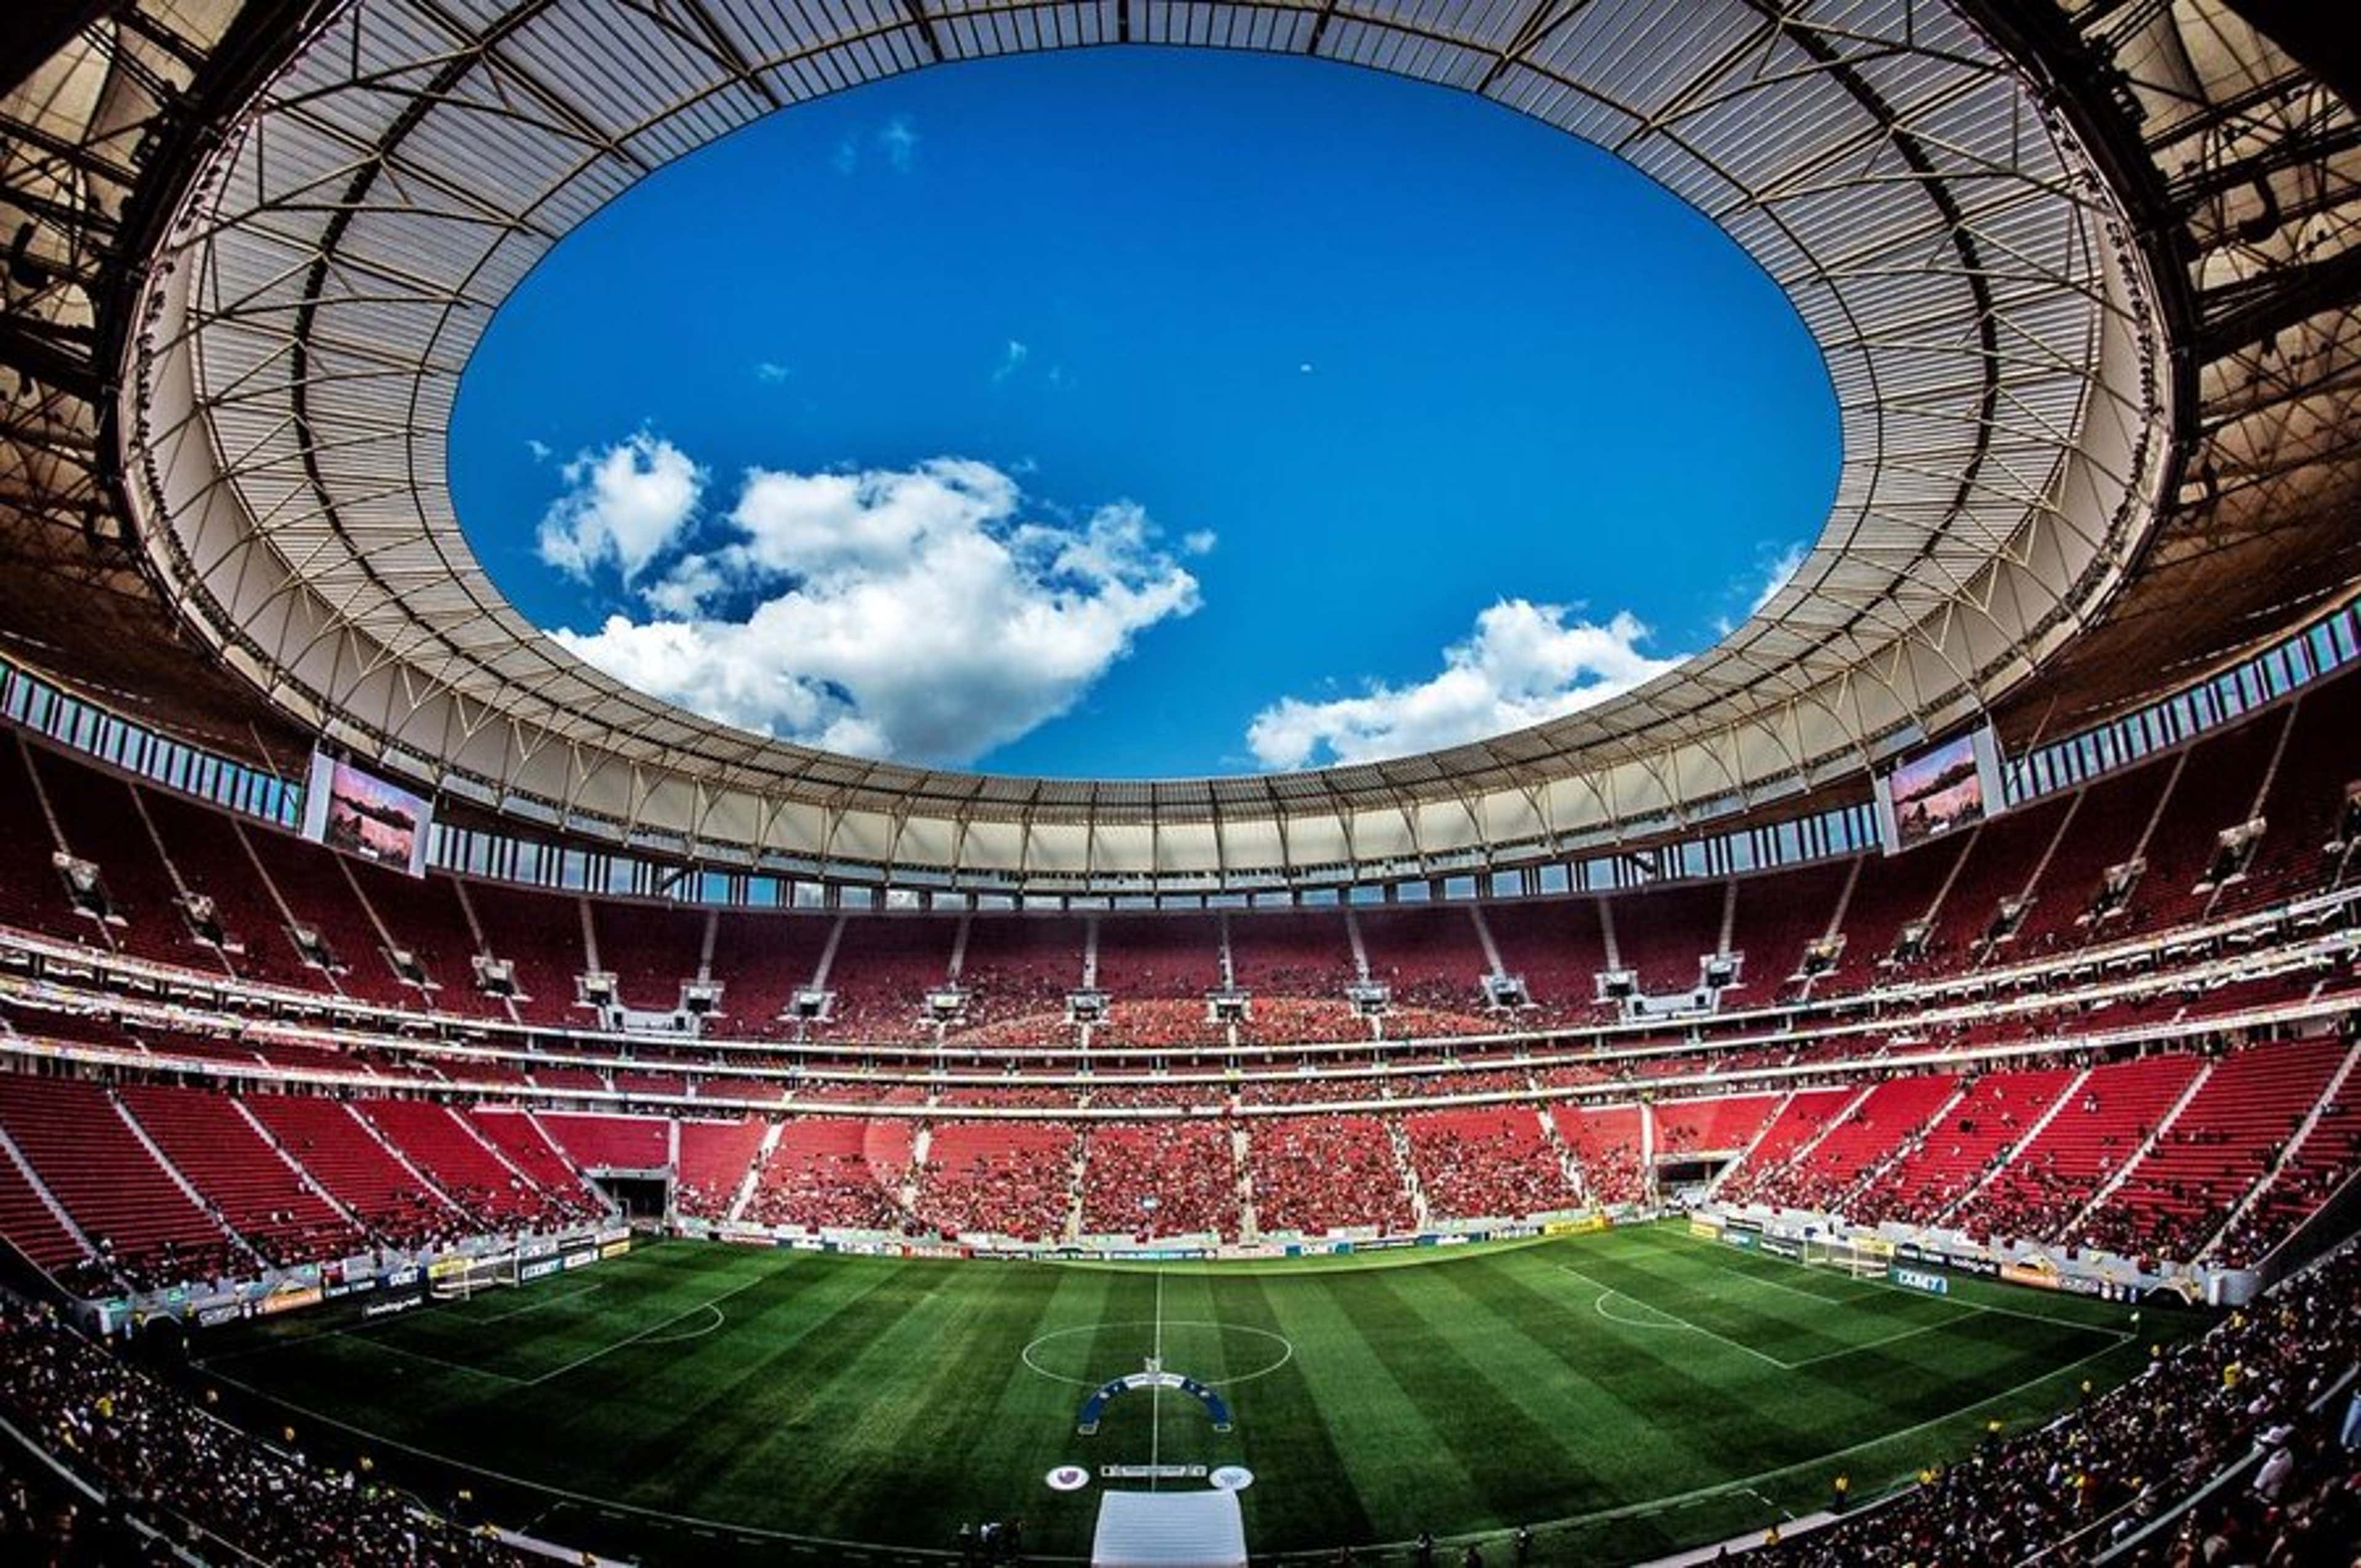 Flamengo divulga preço de ingressos para jogo da Libertadores no Mané